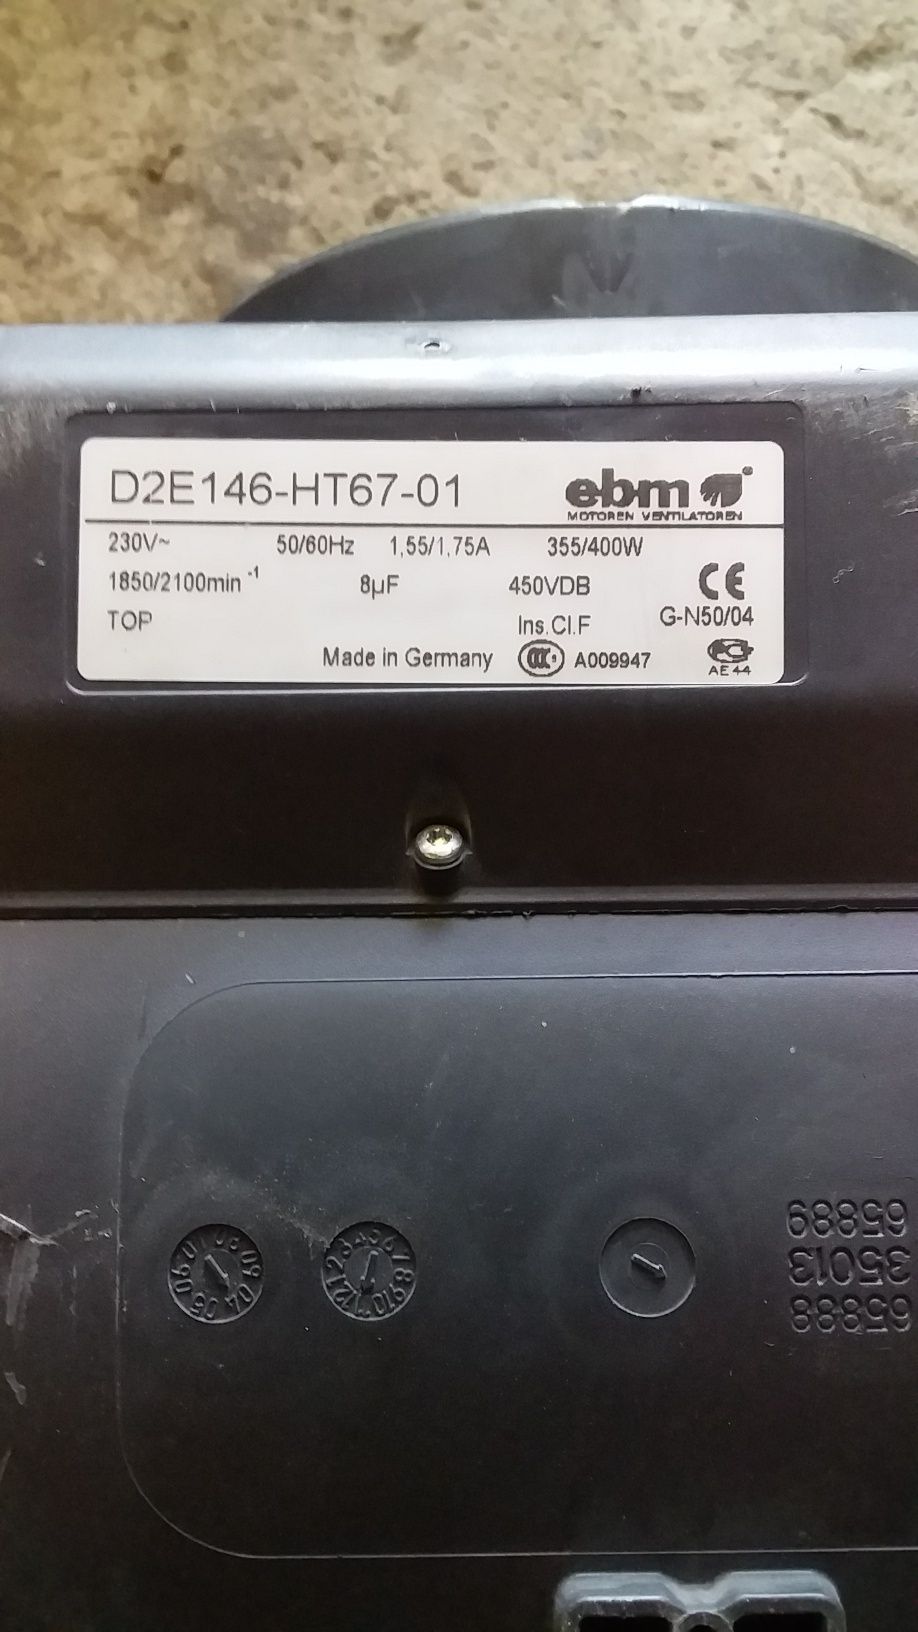 Вентилятор ebmo  D2E 146 - HT67 - 01